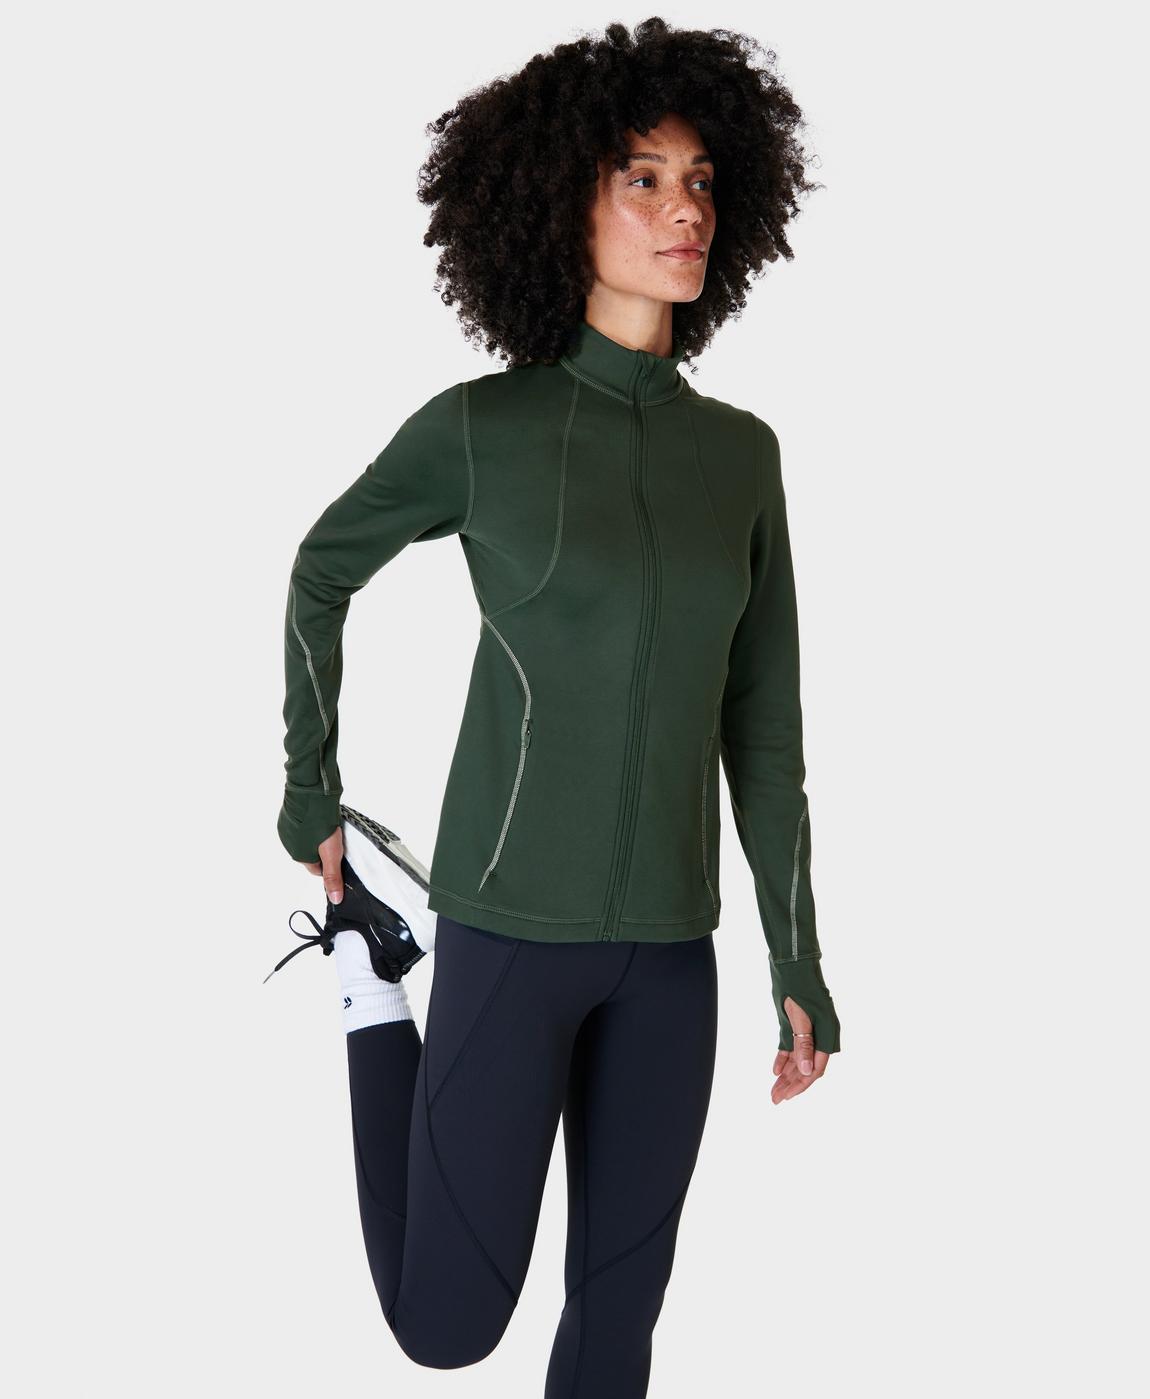 Therma Boost Running Zip Up - Trek Green, Women's Jumpers + Hoodies